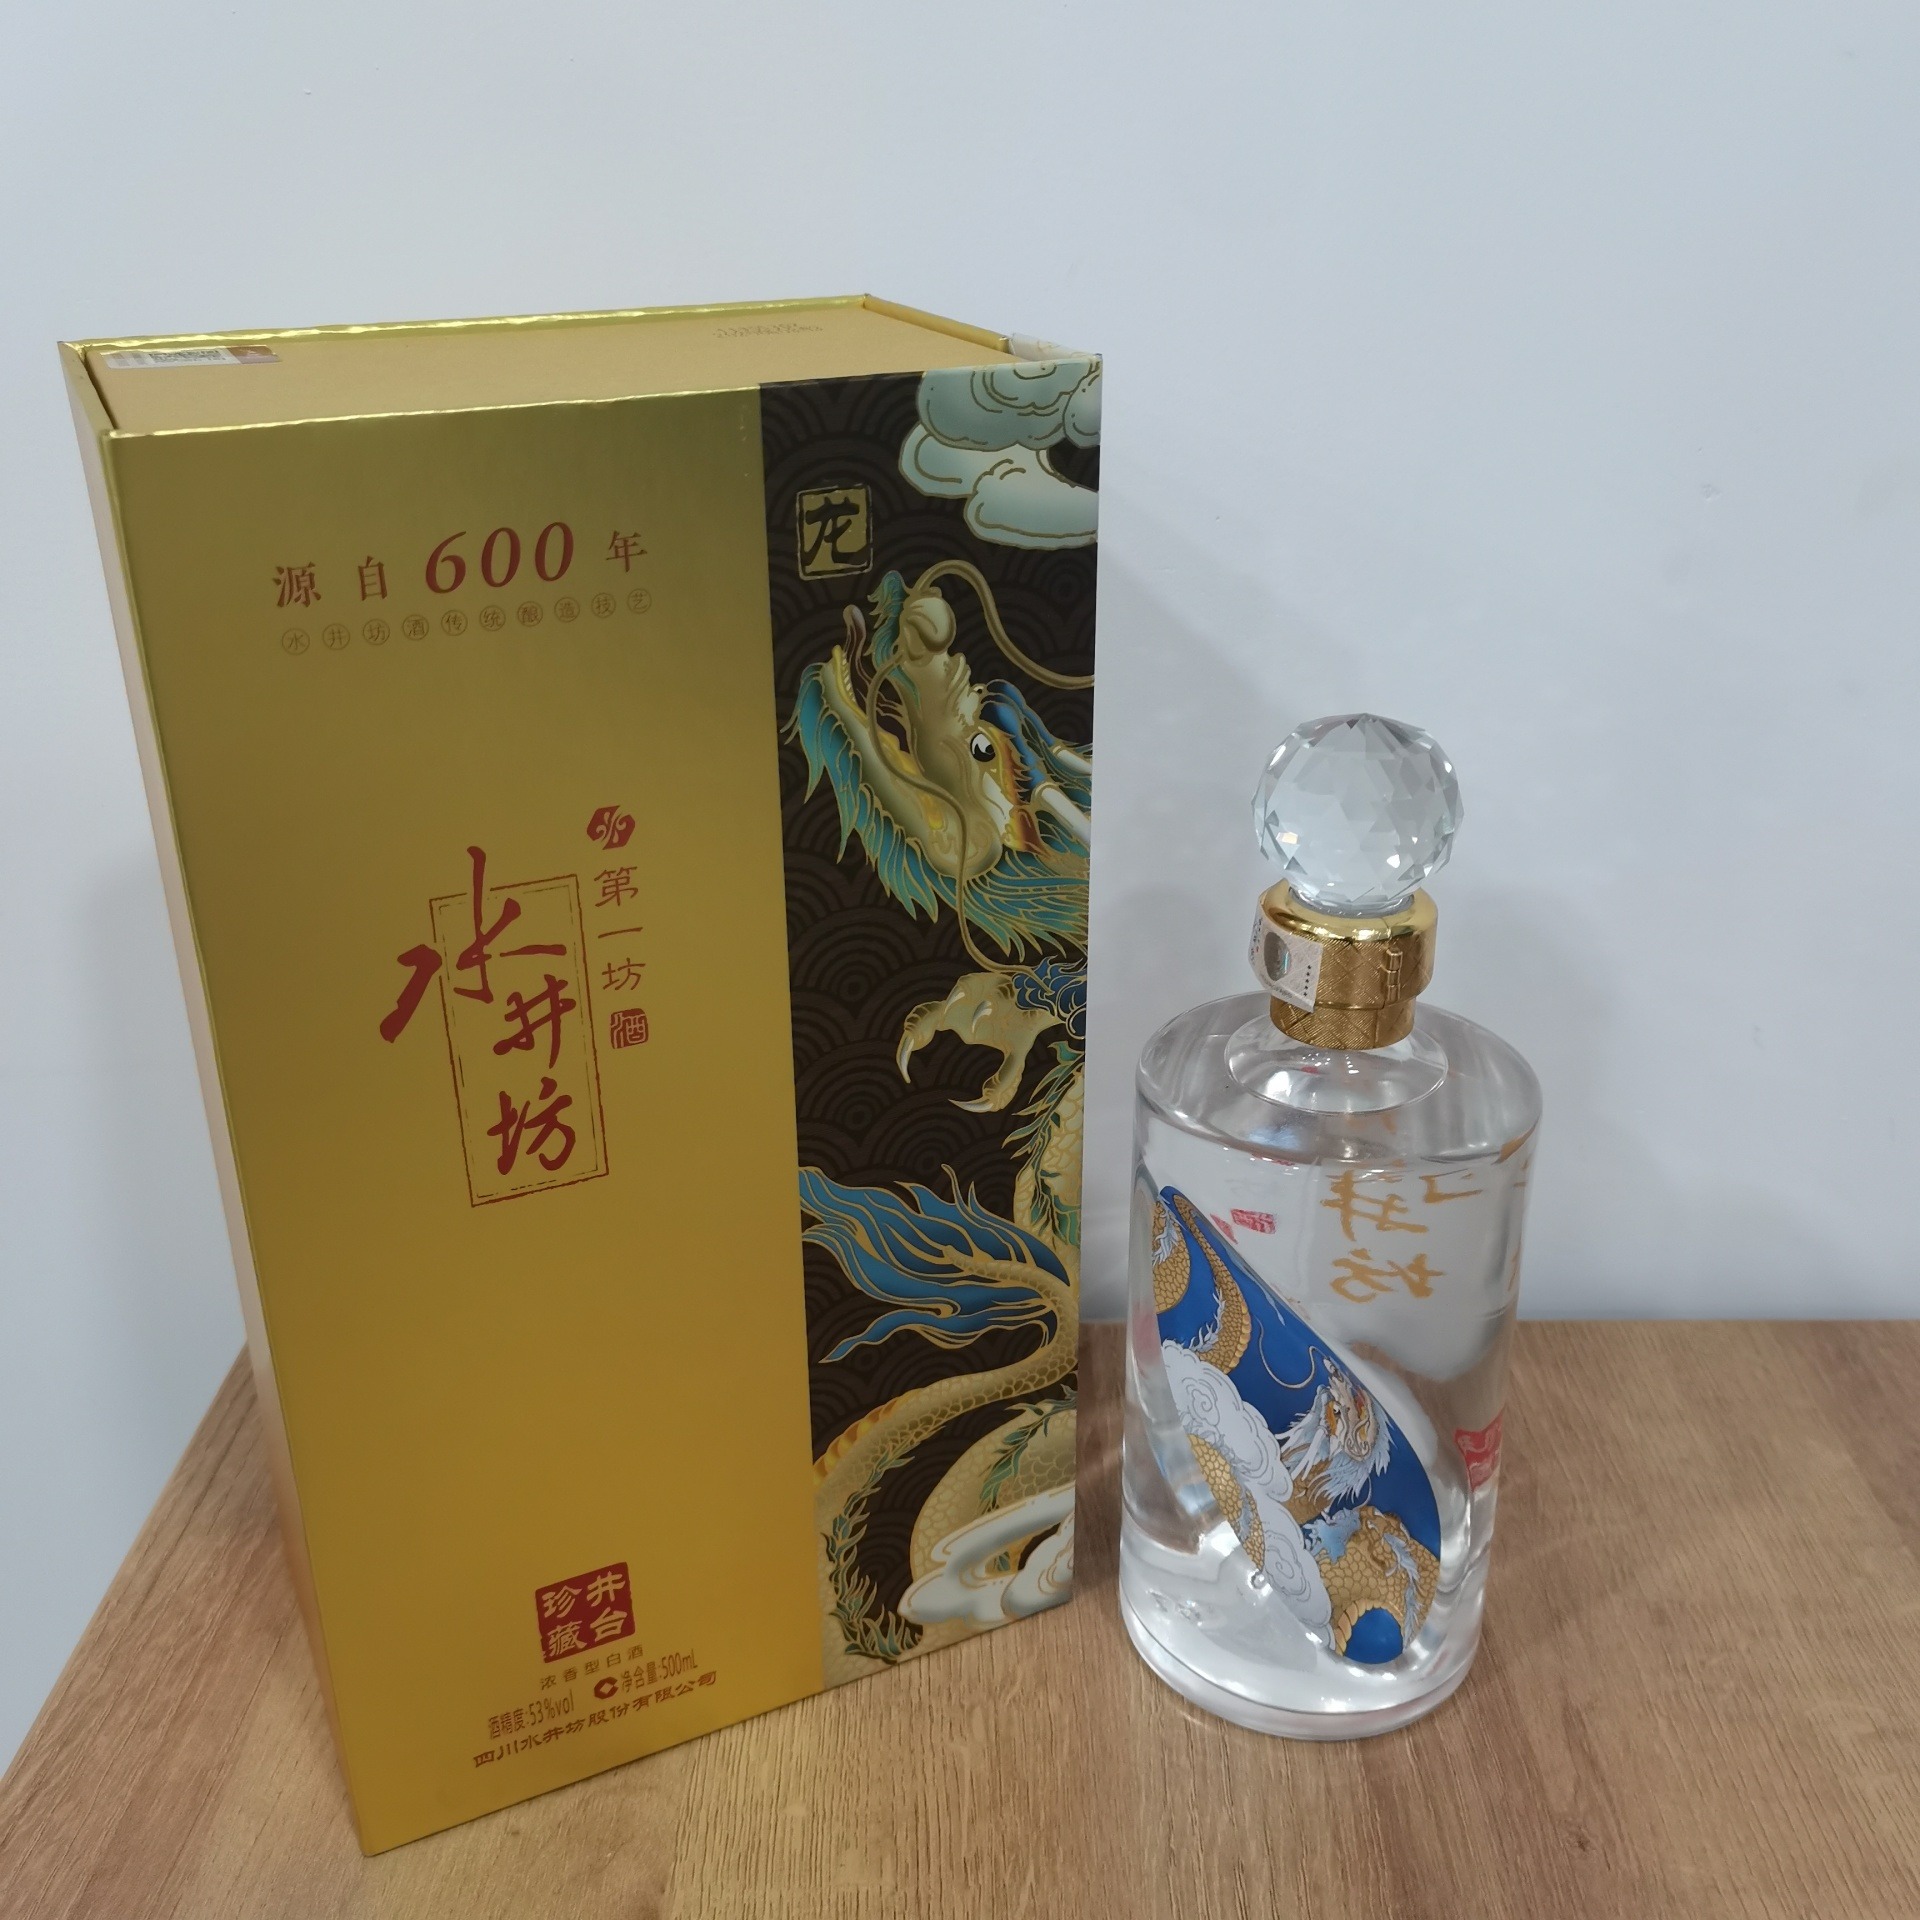 水井坊龙酒珍藏井台 浓香型白酒 源自600年 水井坊酒传统酿造技艺